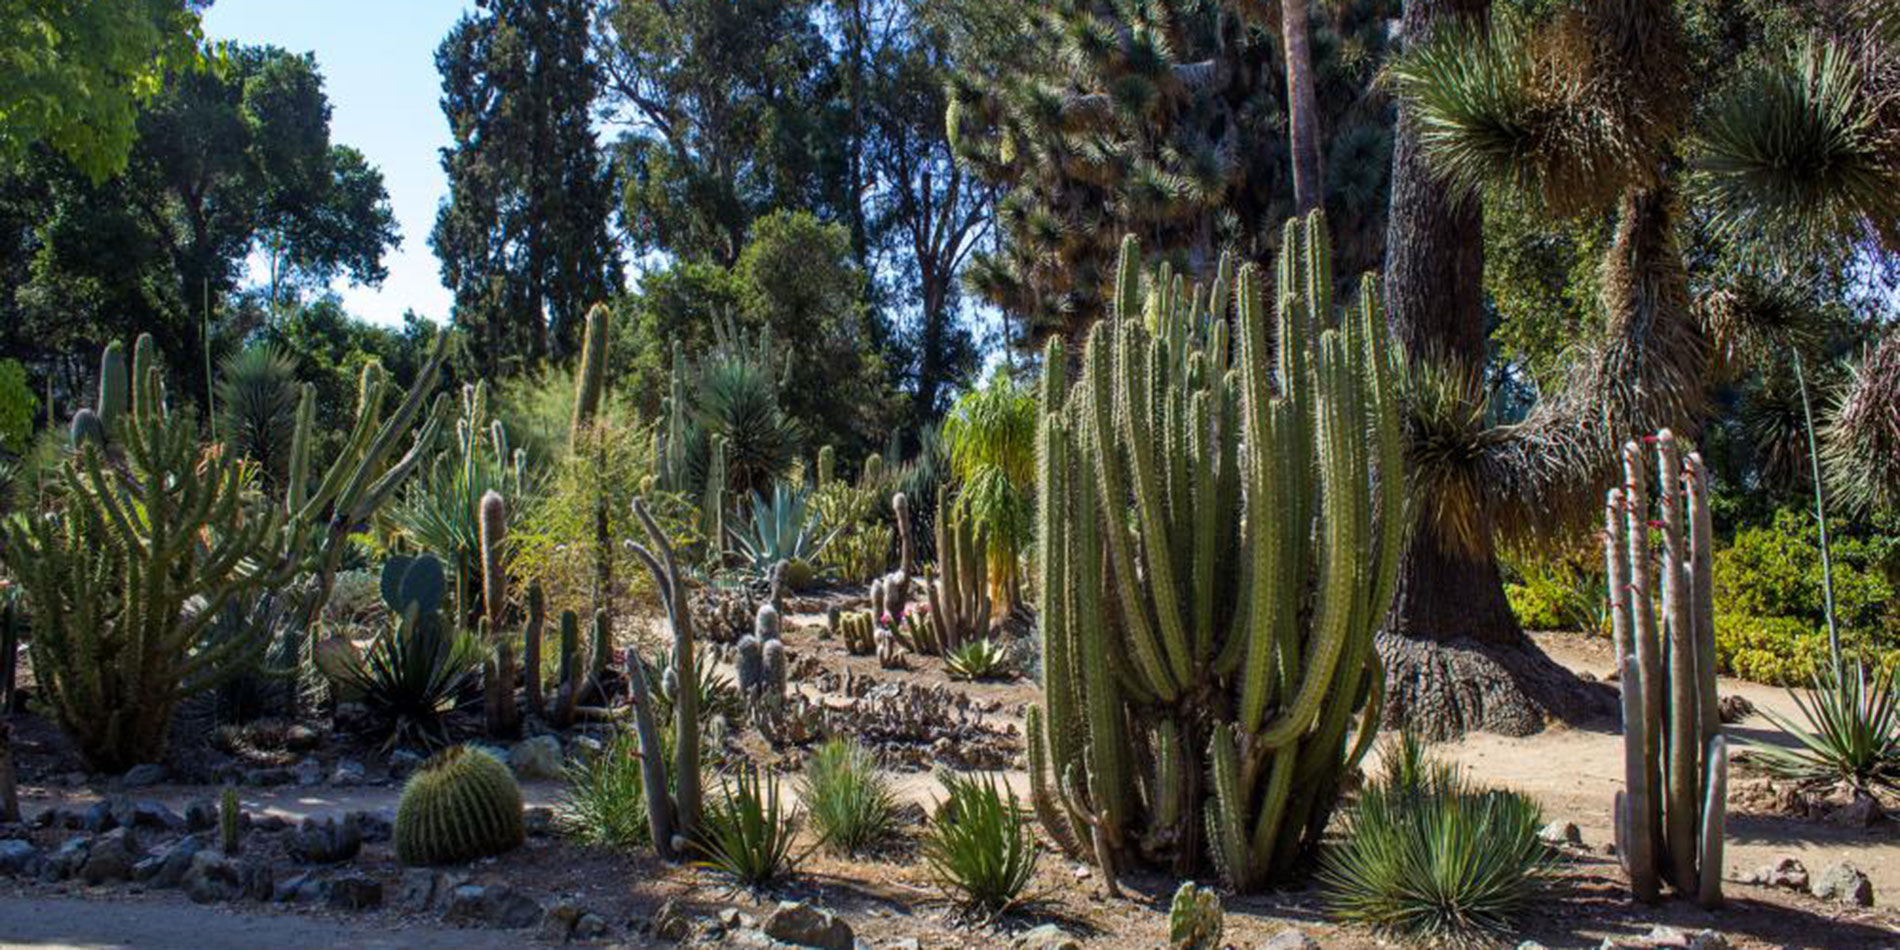 Stanford cactus garden